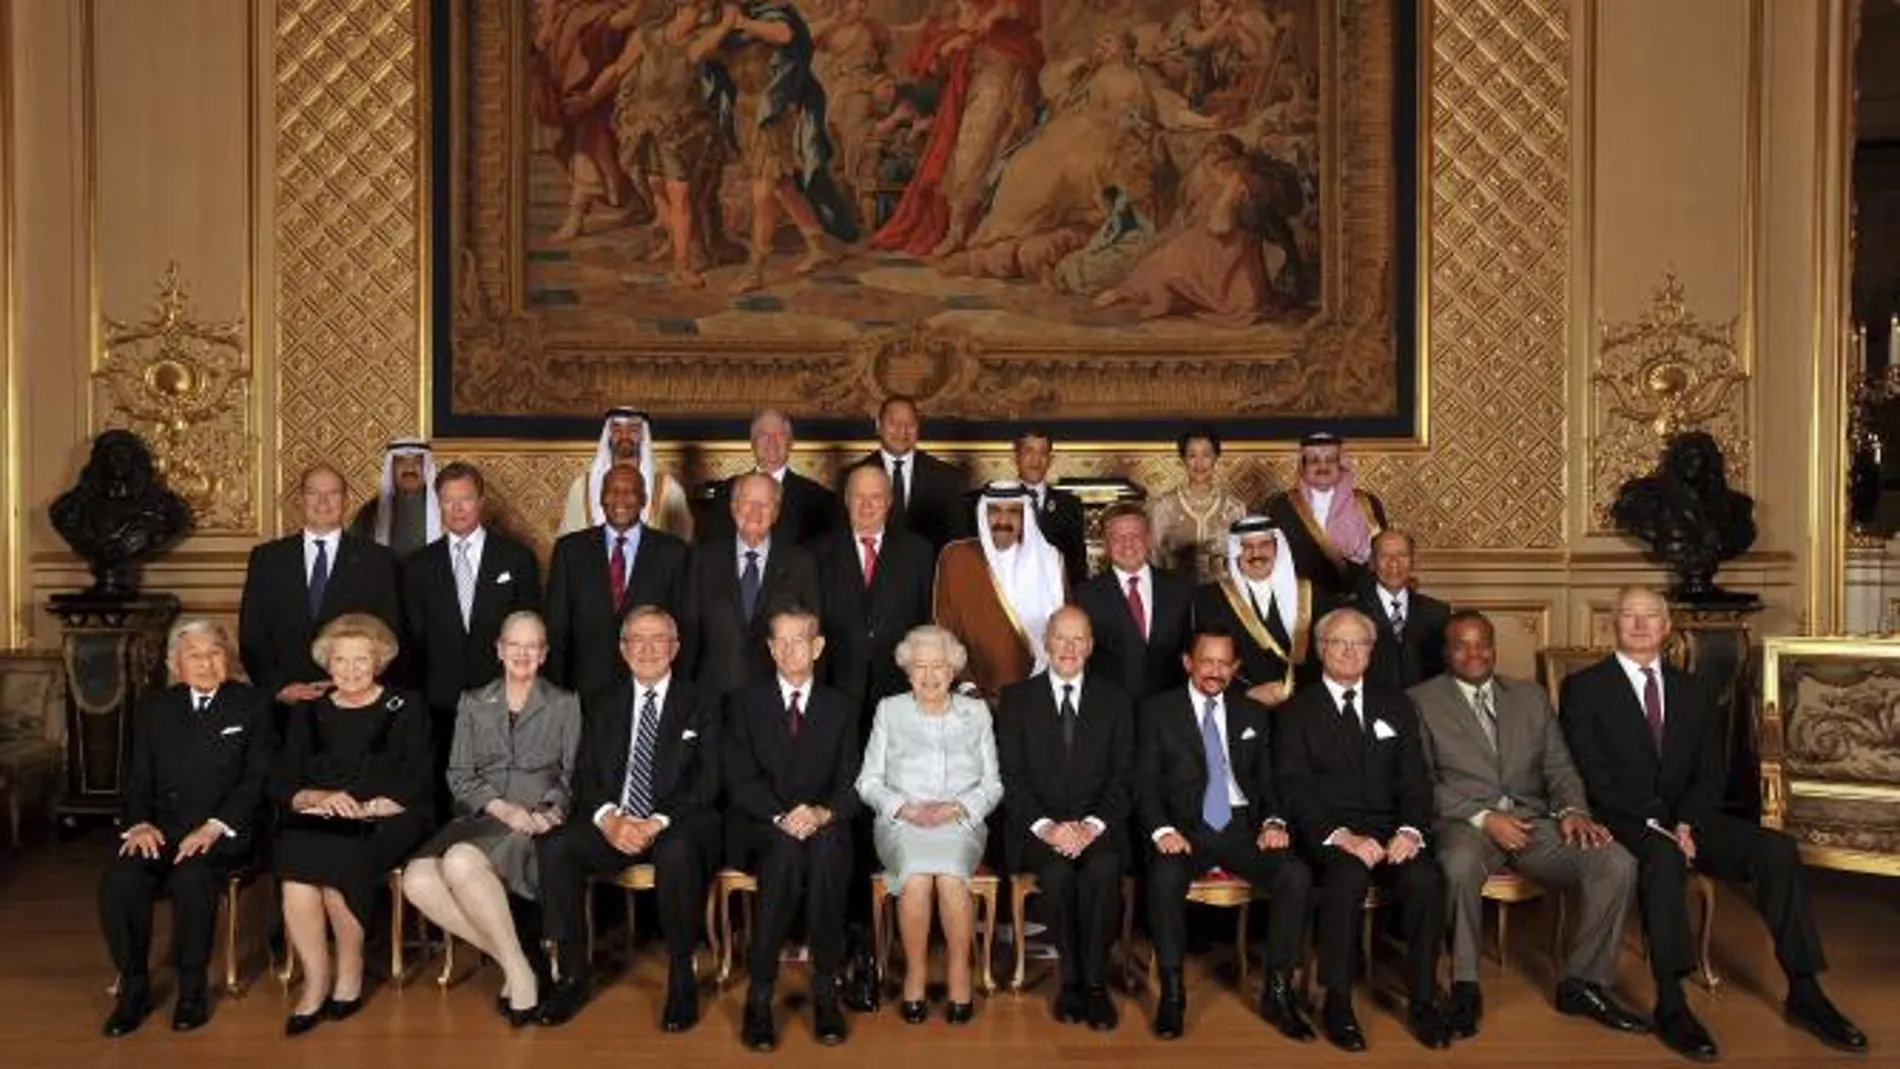 Isabel II celebra sus 60 años en el trono con 26 monarquías